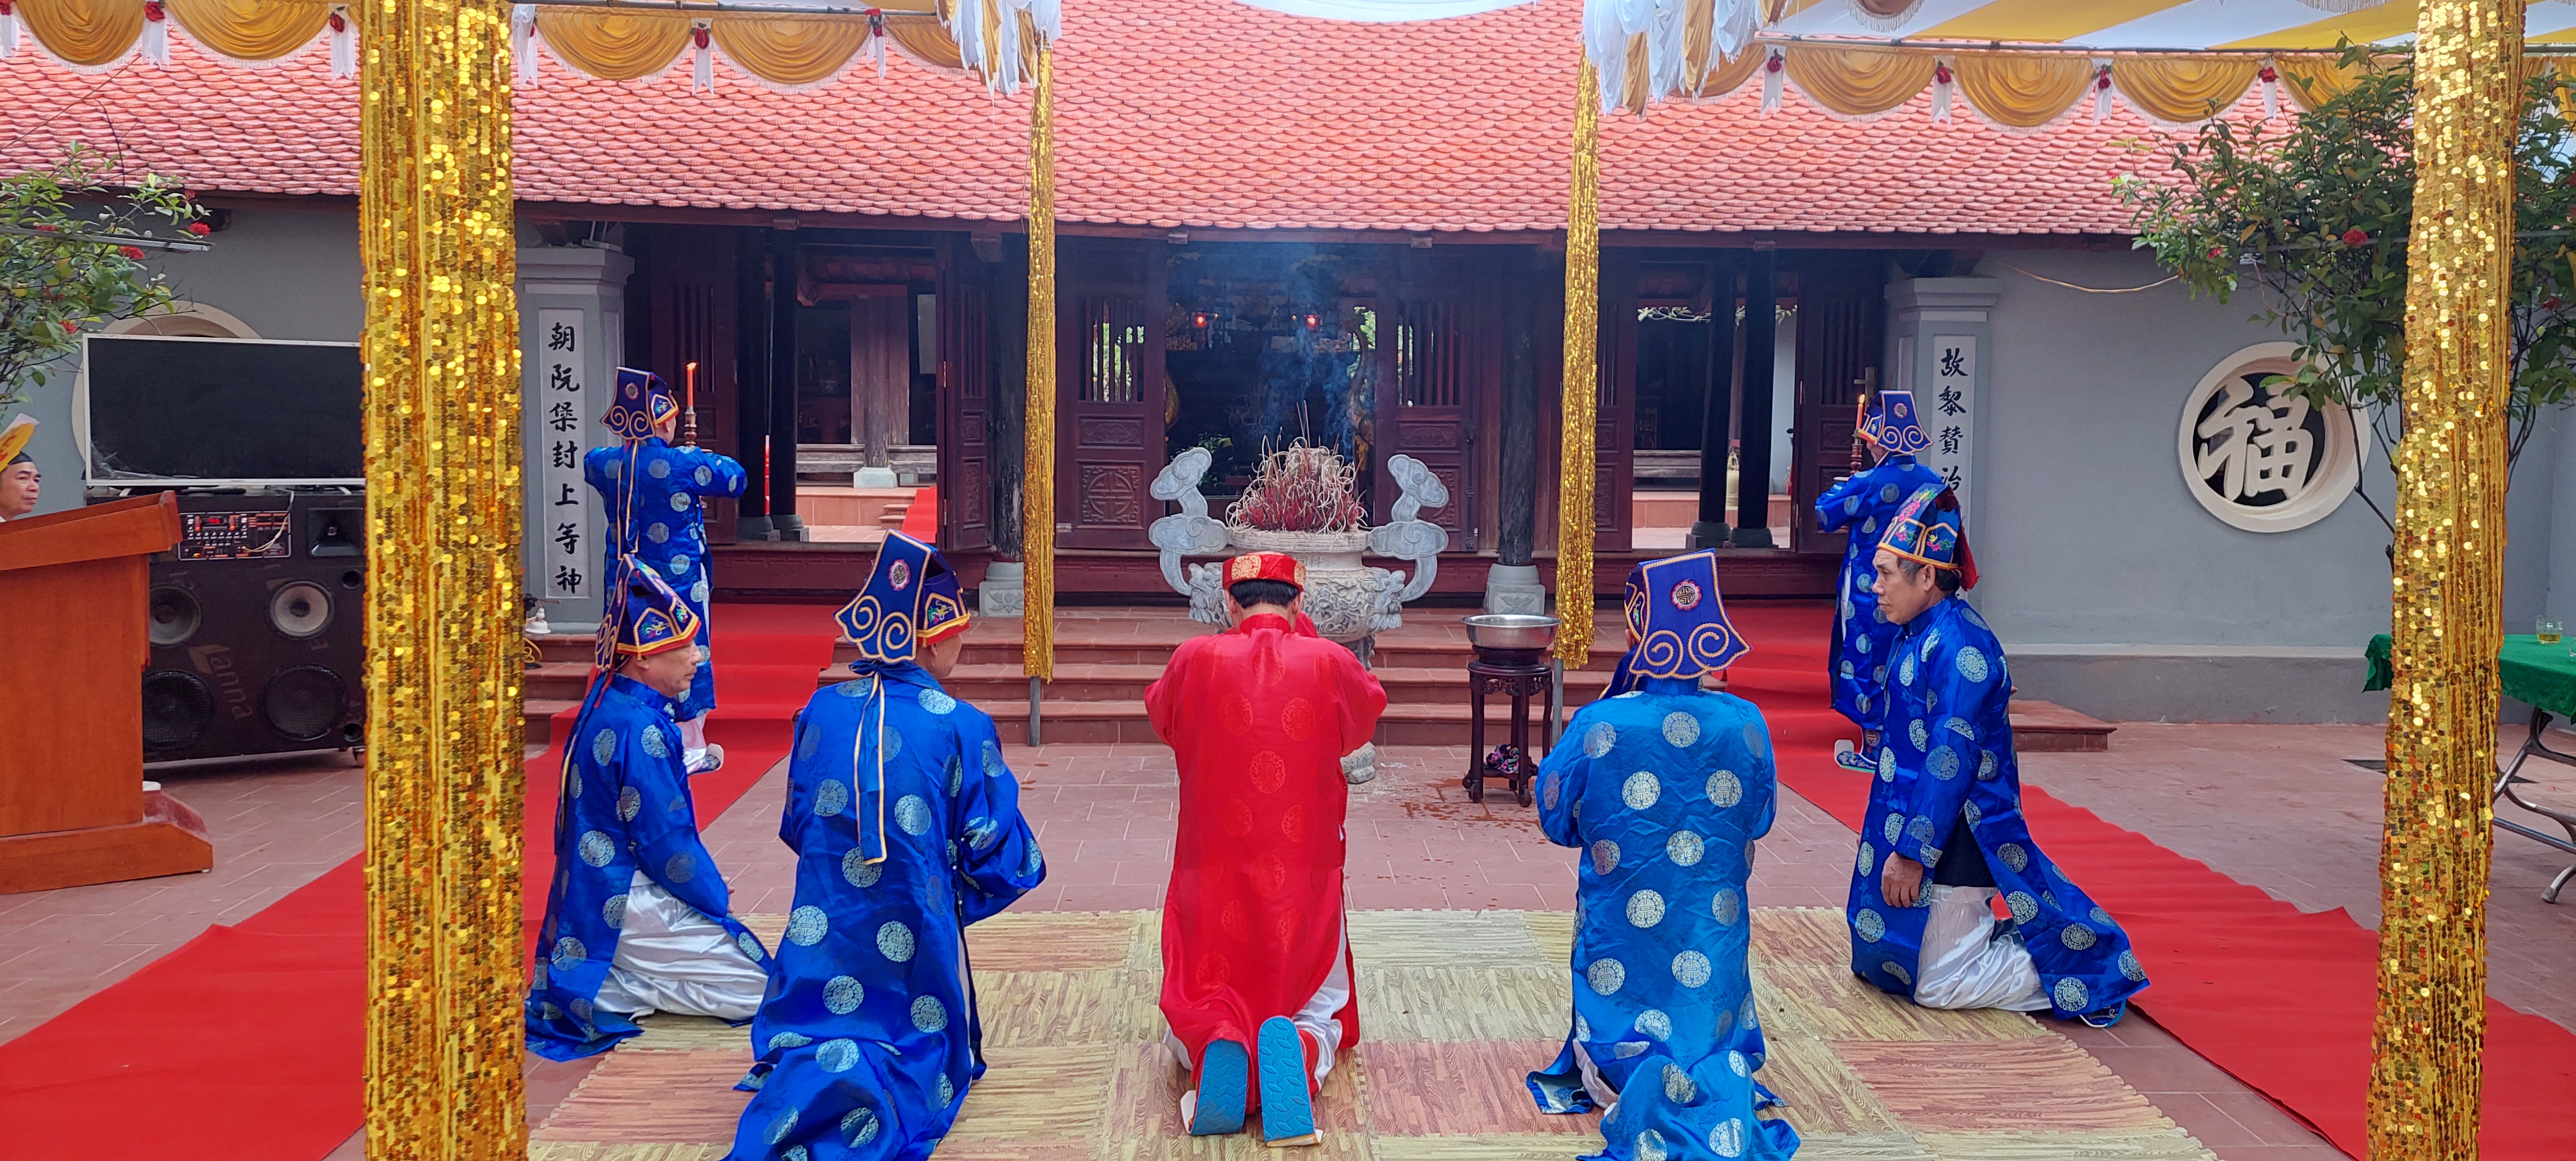 Kỷ niệm 398 năm ngày mất và khánh thành trùng tu đền thờ cụ Ngô Trí Hòa